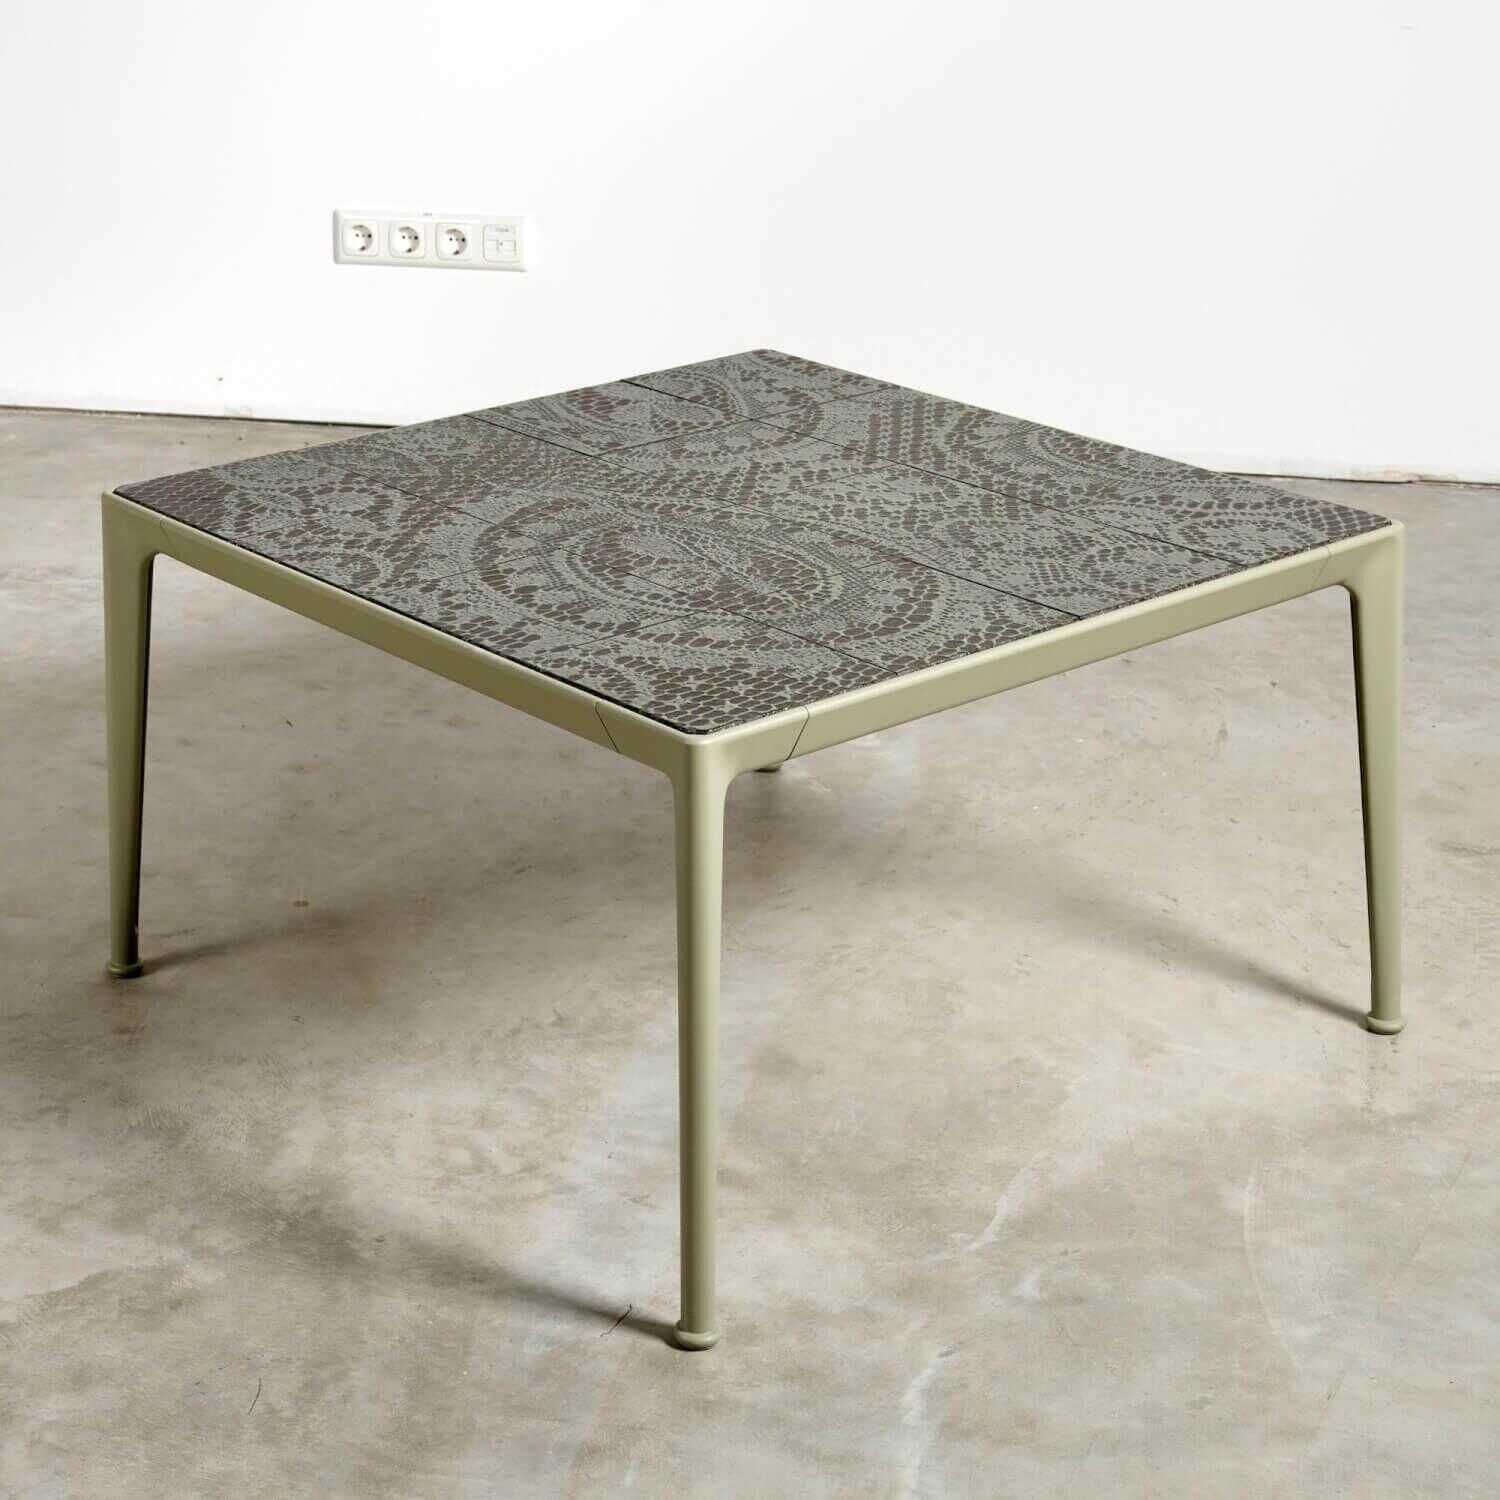 Couchtisch Outdoor Mirto Tischplatte Lavastein Farbe Salbei Gestell Aluminium Farbe Salbei